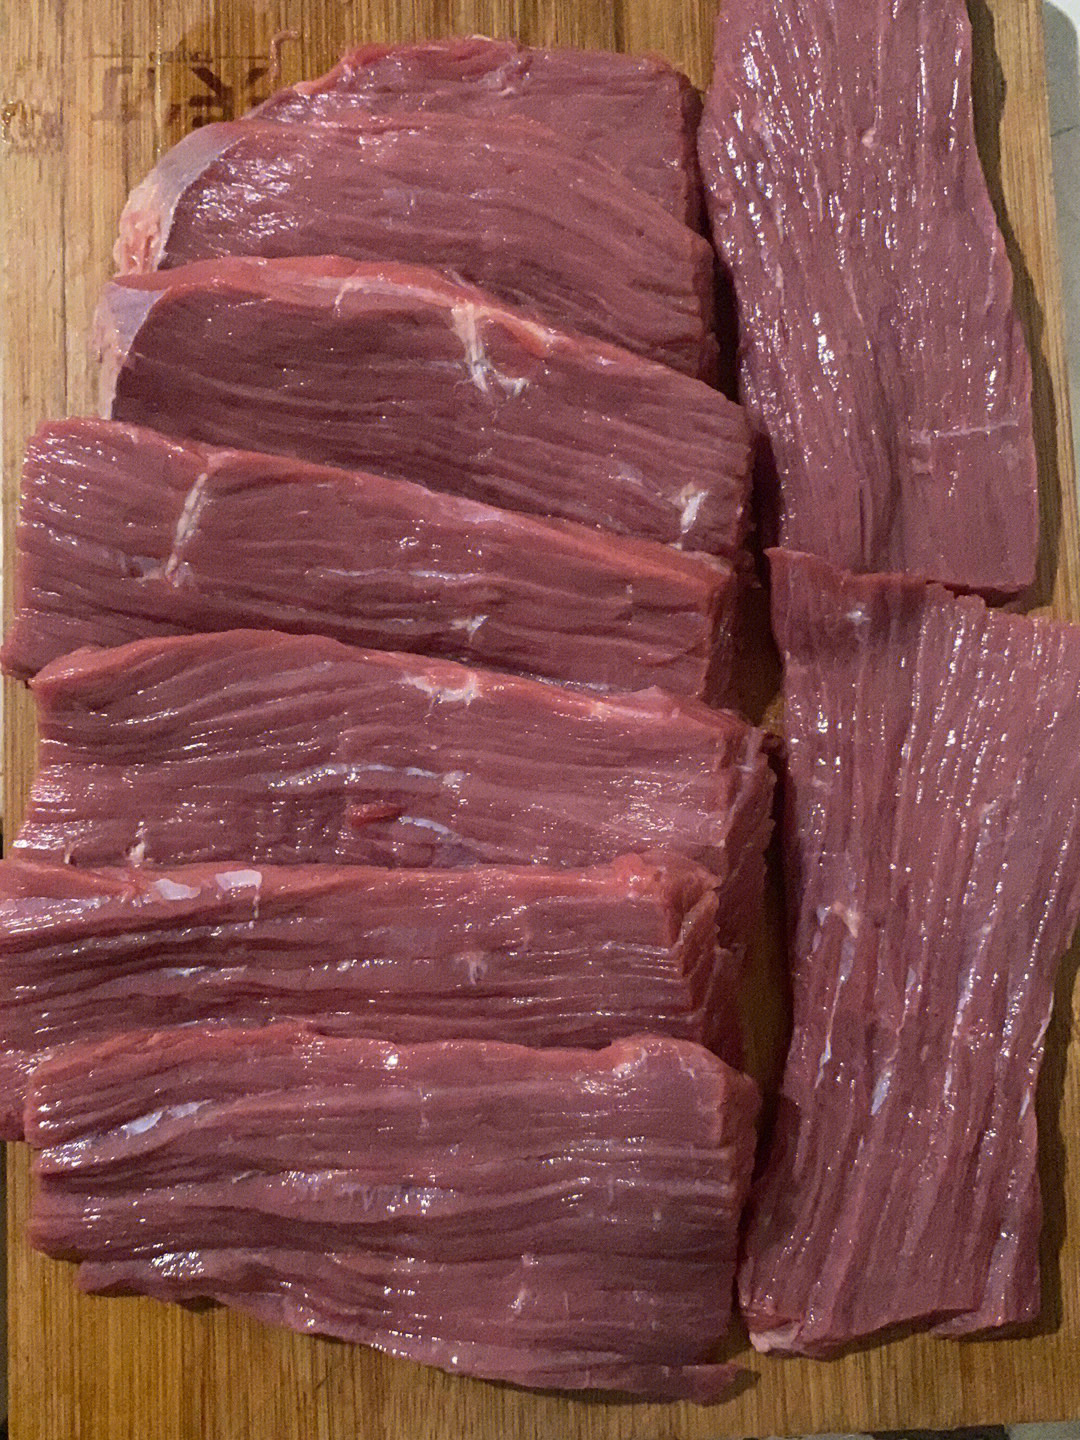 分享一个麻辣牛肉干的做法:今天买了五斤牛牛后腿肉,清洗一下,顺着